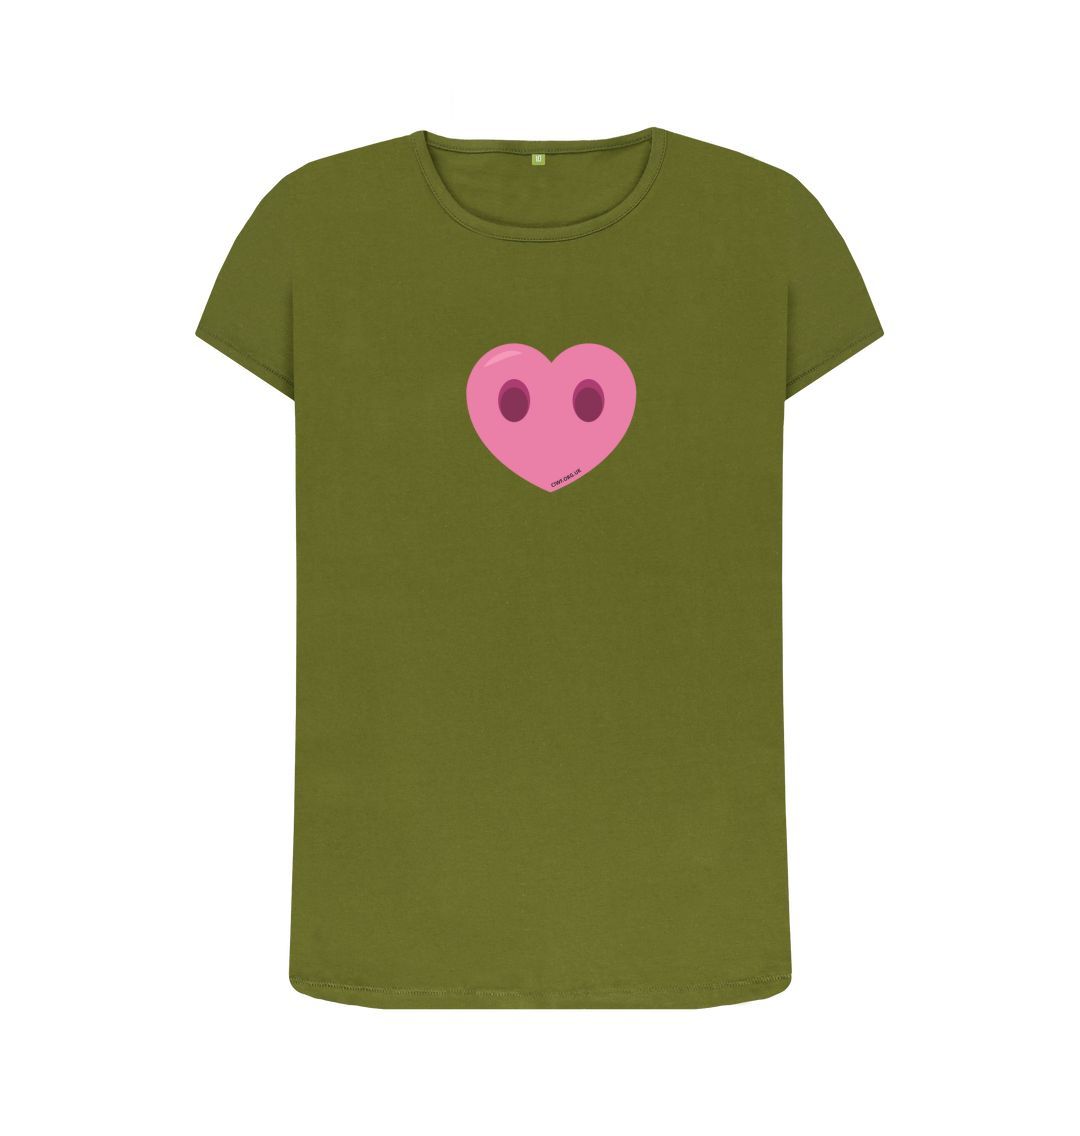 Moss Green Women's Compassion Heart T-Shirt